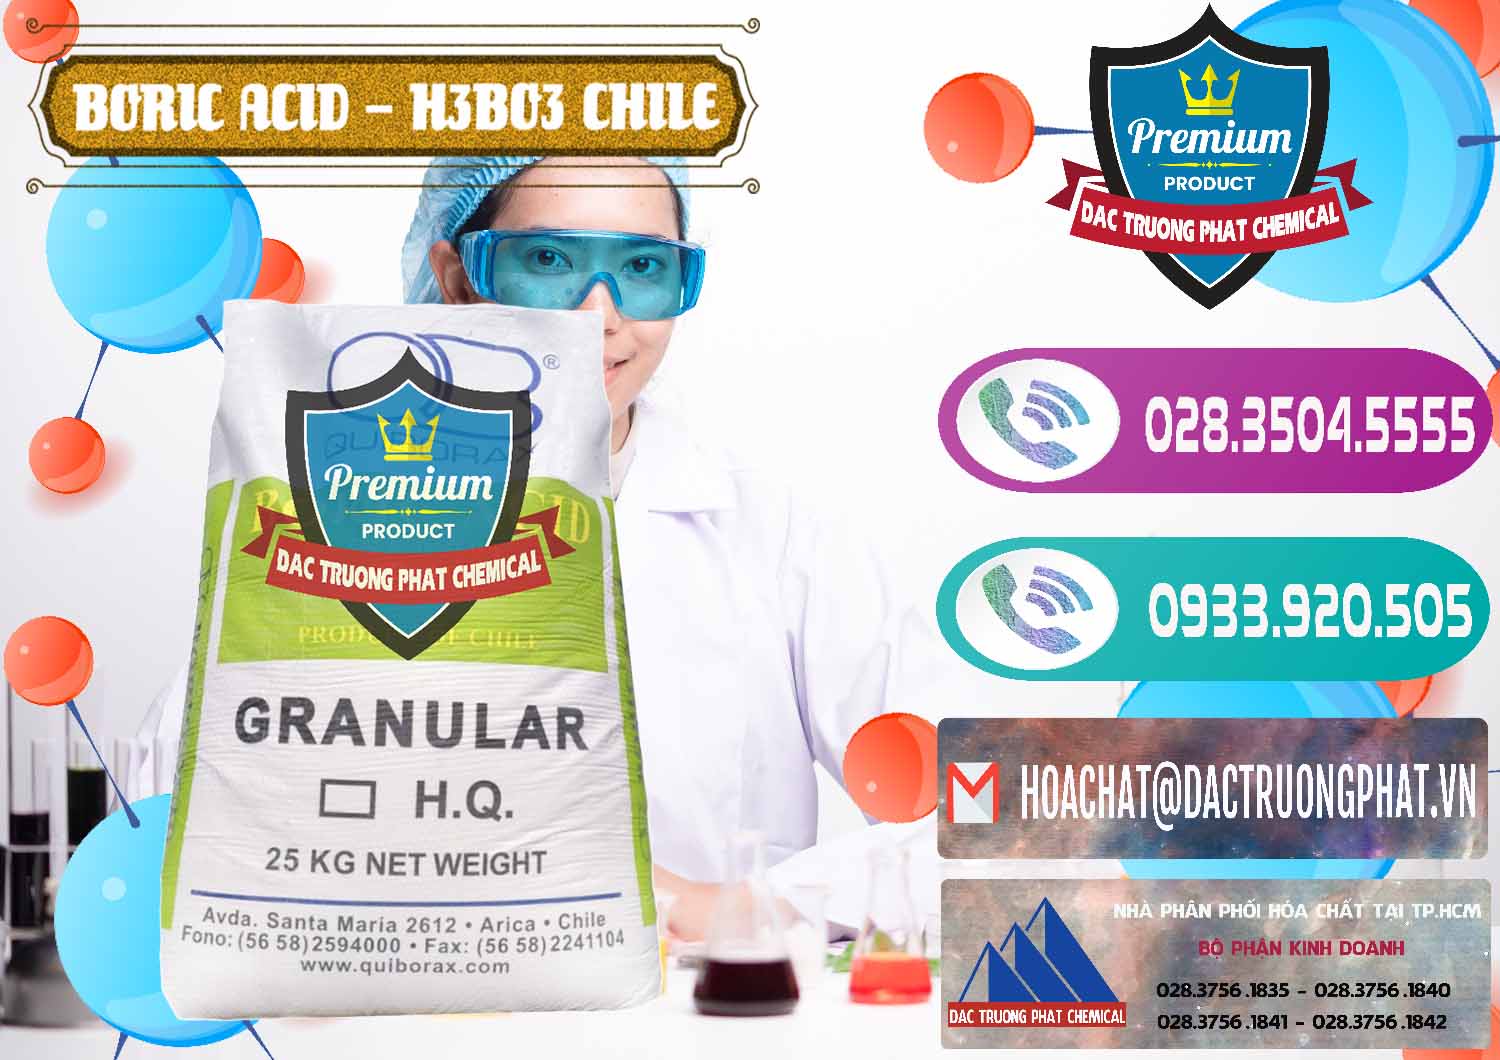 Đơn vị chuyên phân phối _ bán Acid Boric – Axit Boric H3BO3 99% Quiborax Chile - 0281 - Cty kinh doanh - cung cấp hóa chất tại TP.HCM - hoachatxulynuoc.com